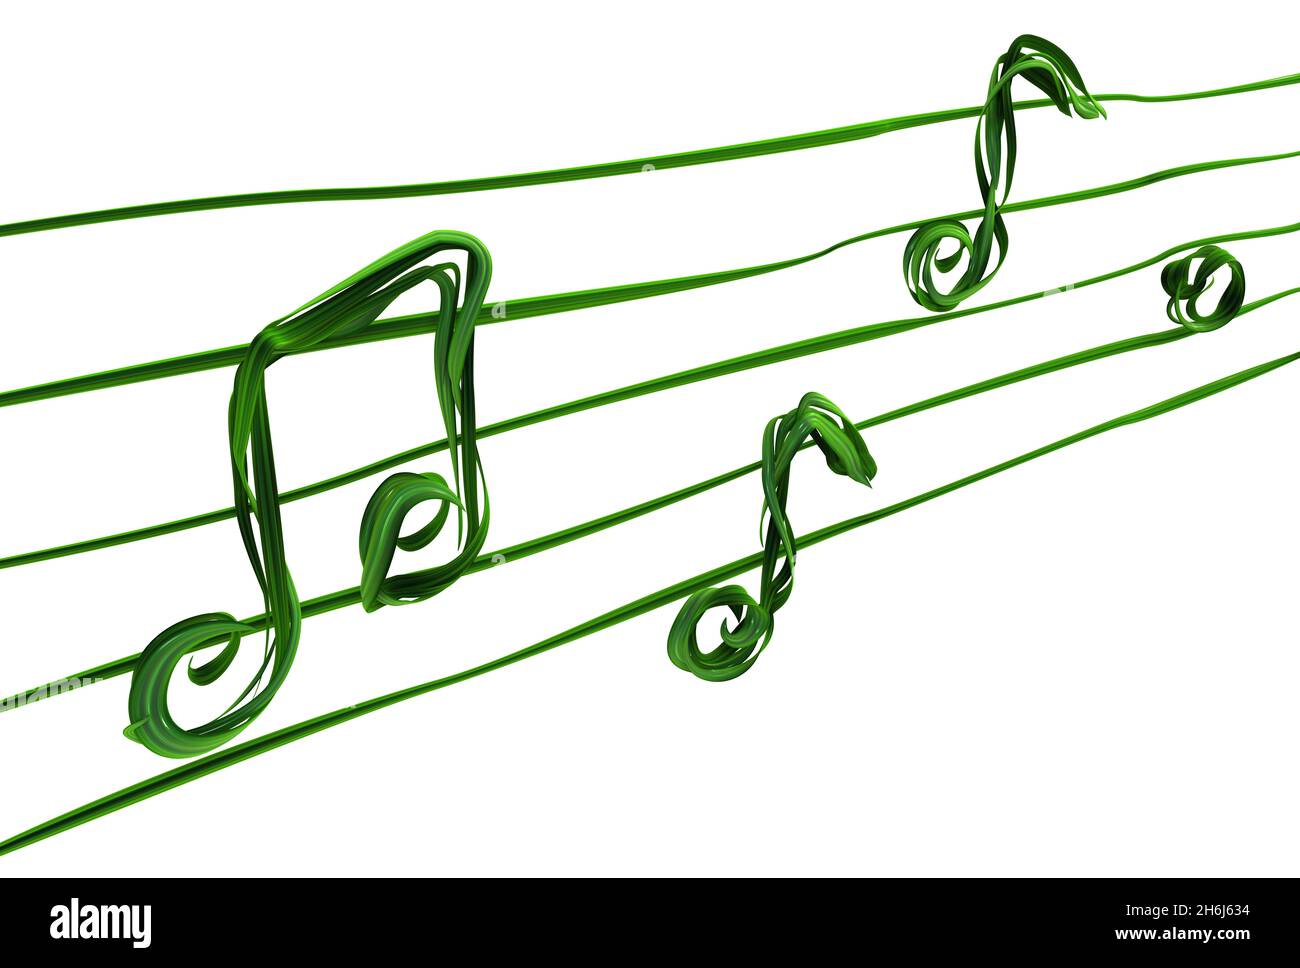 Piante vitigni verde crescente musica torcente note linee forma, illustrazione 3d, orizzontale, isolato, su bianco Foto Stock